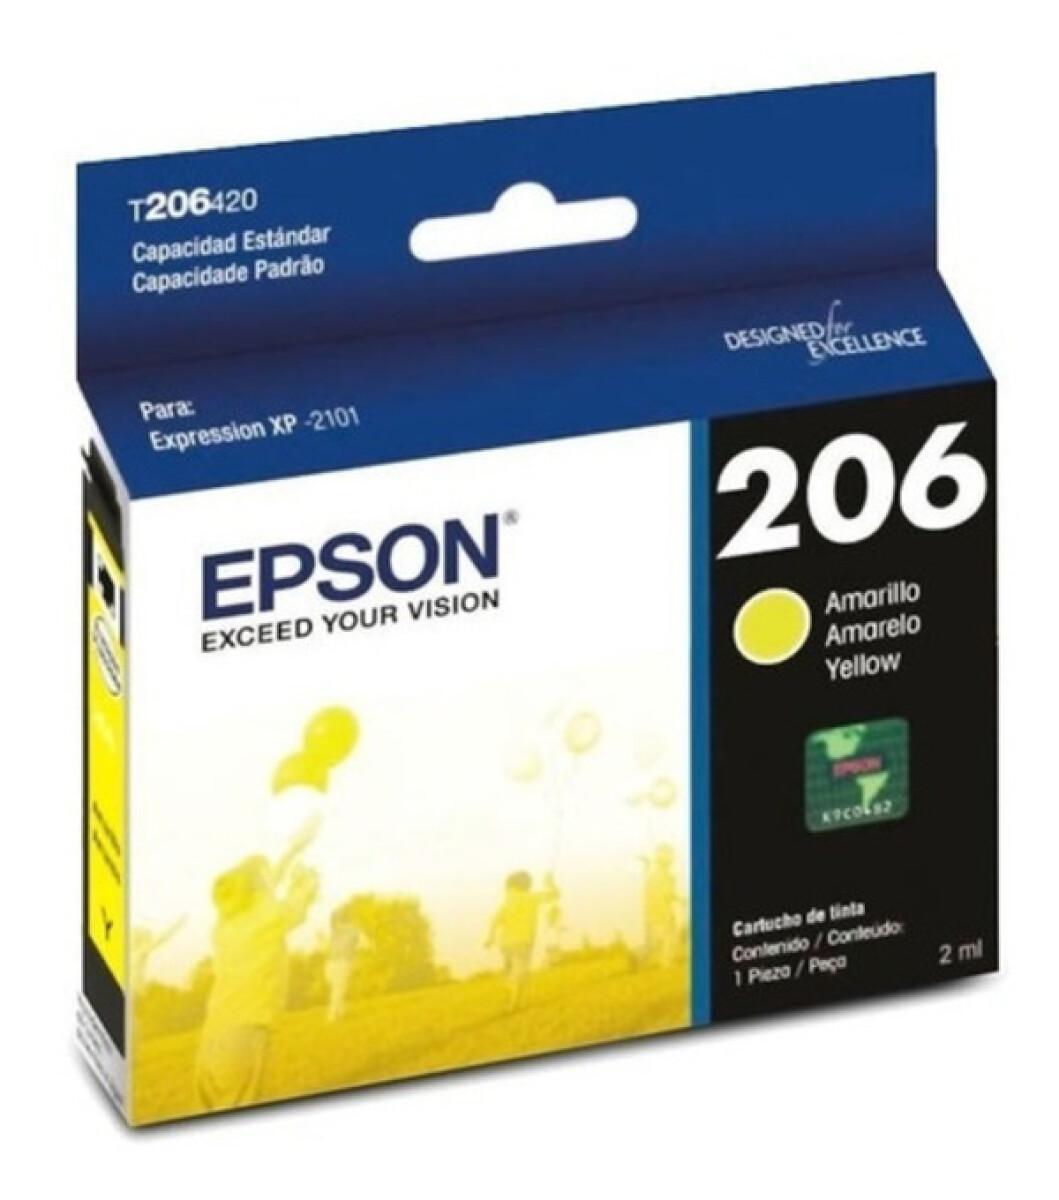 EPSON T206420-AL XP2101 AMARILLO - Epson T206420-al Xp2101 Amarillo 